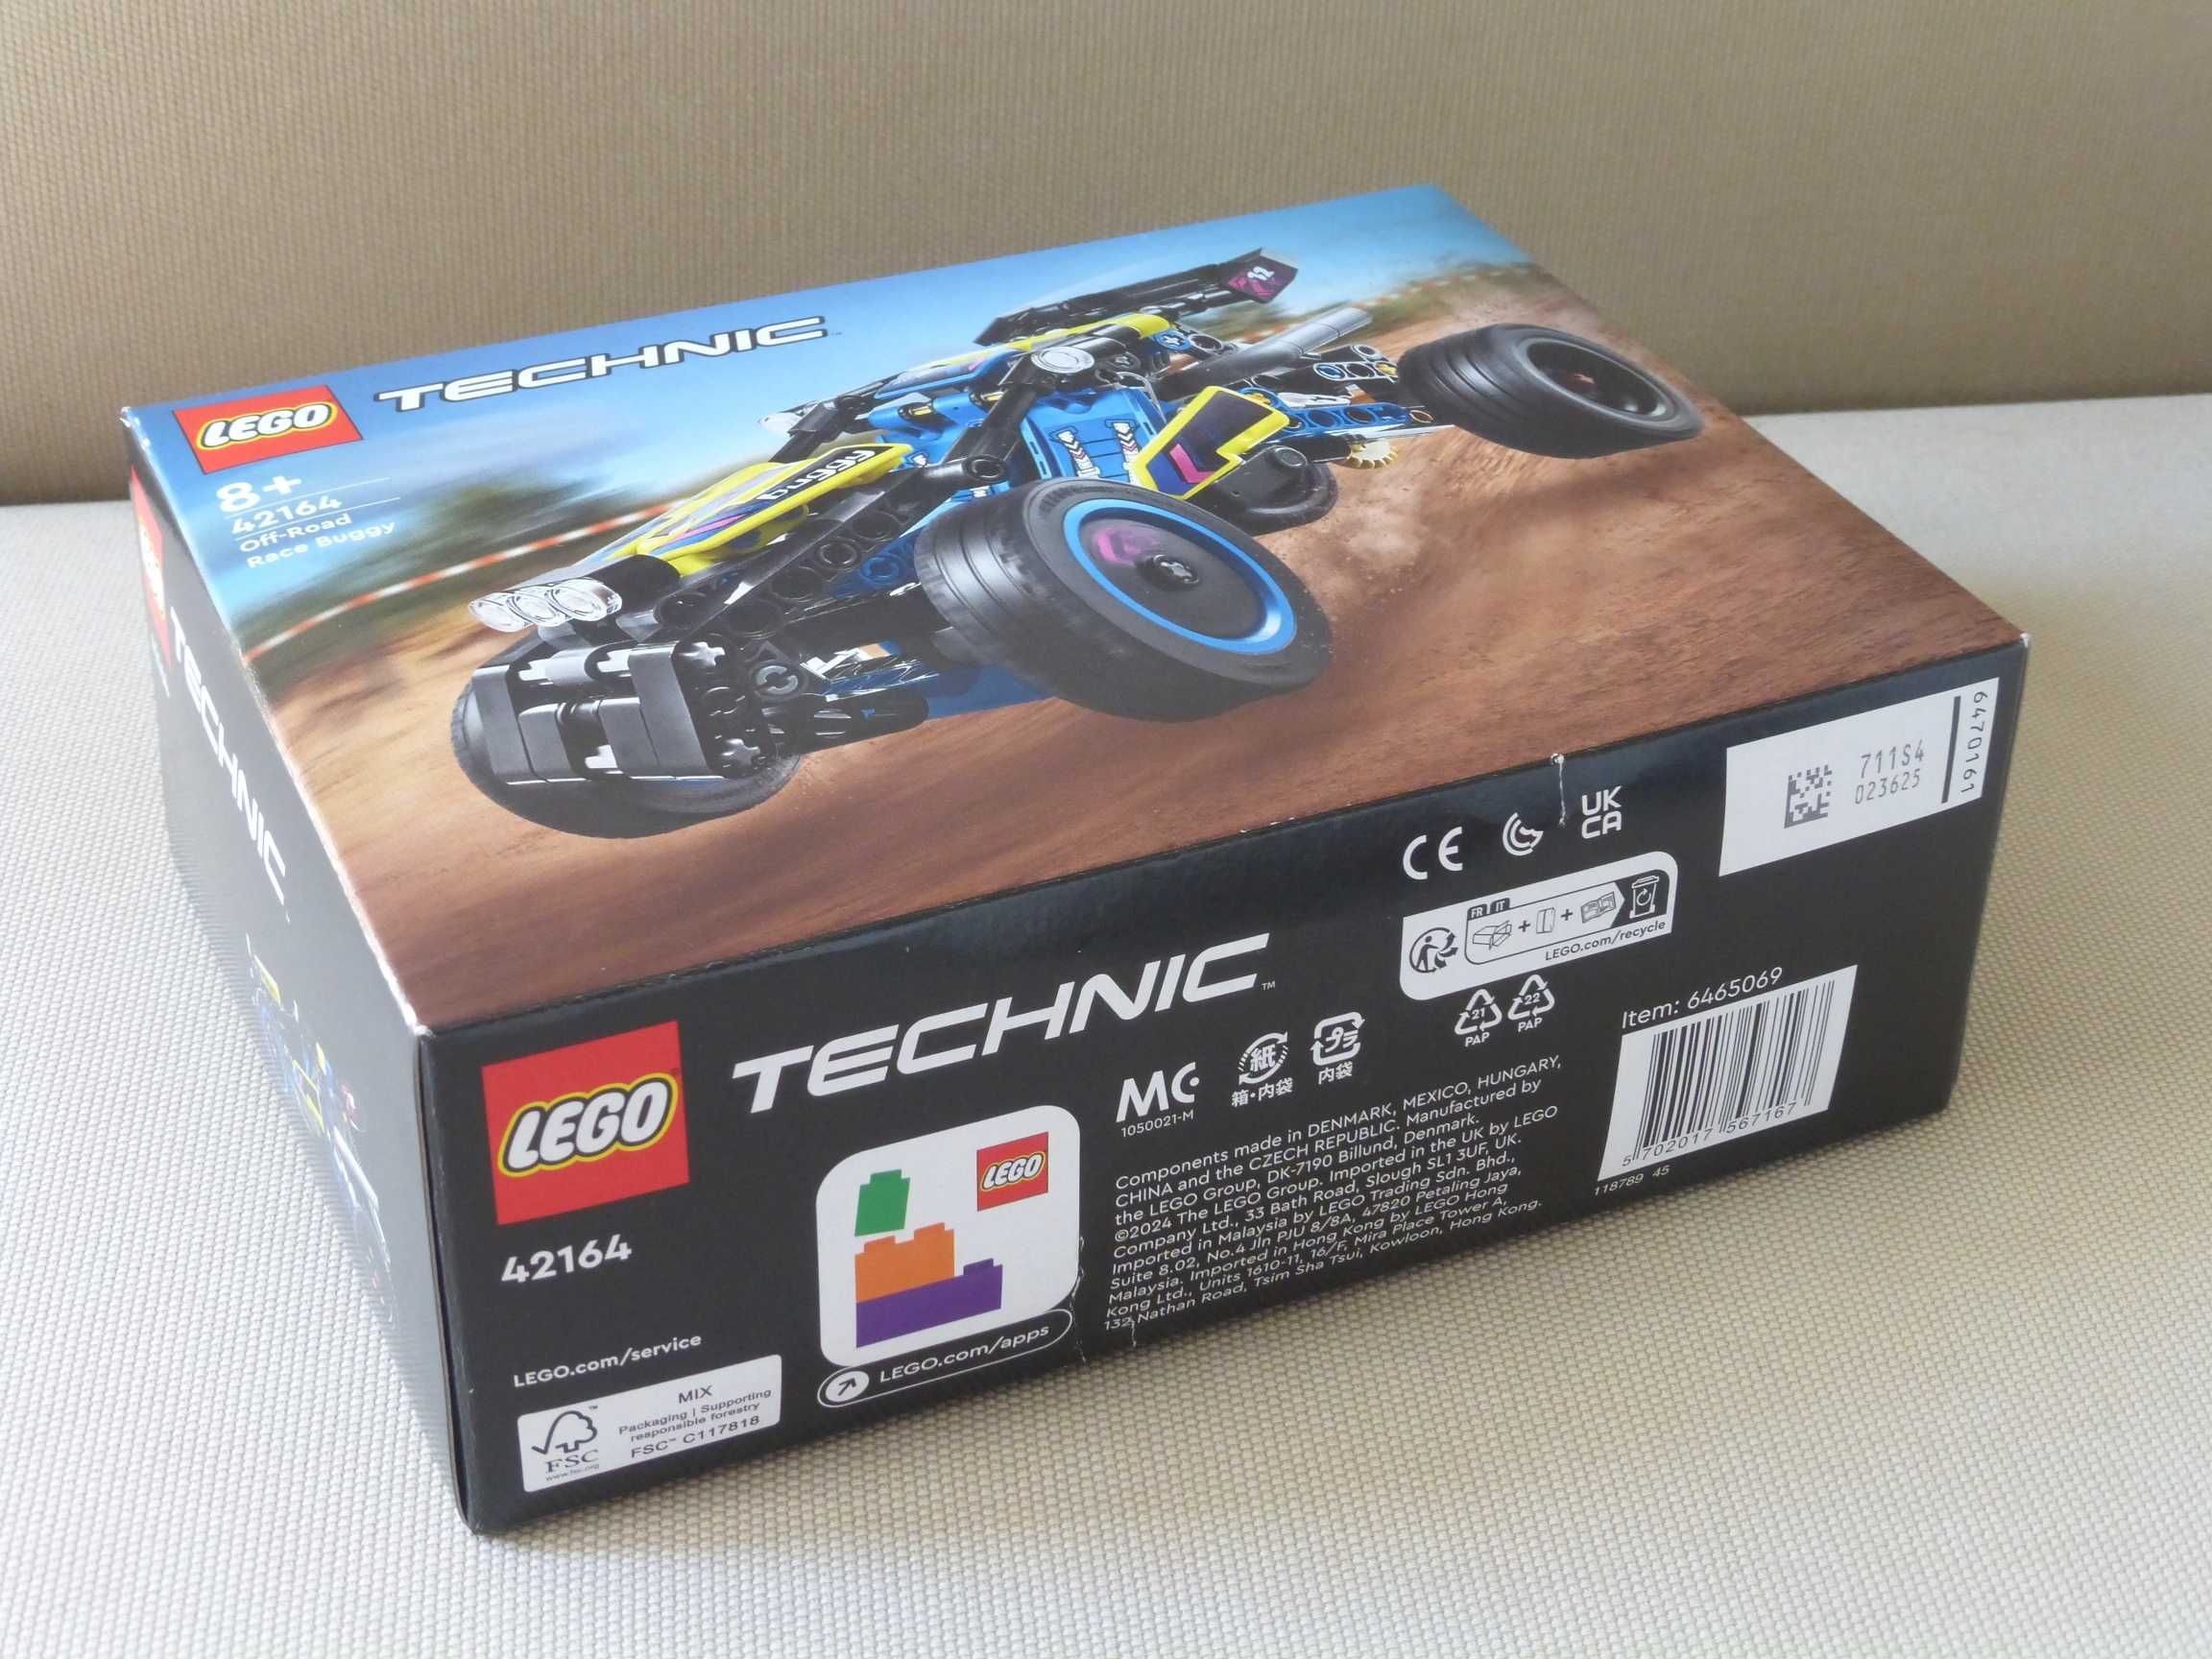 Lego Technic 42164 - Wyścigowy łazik terenowy / Off-Road Race Buggy